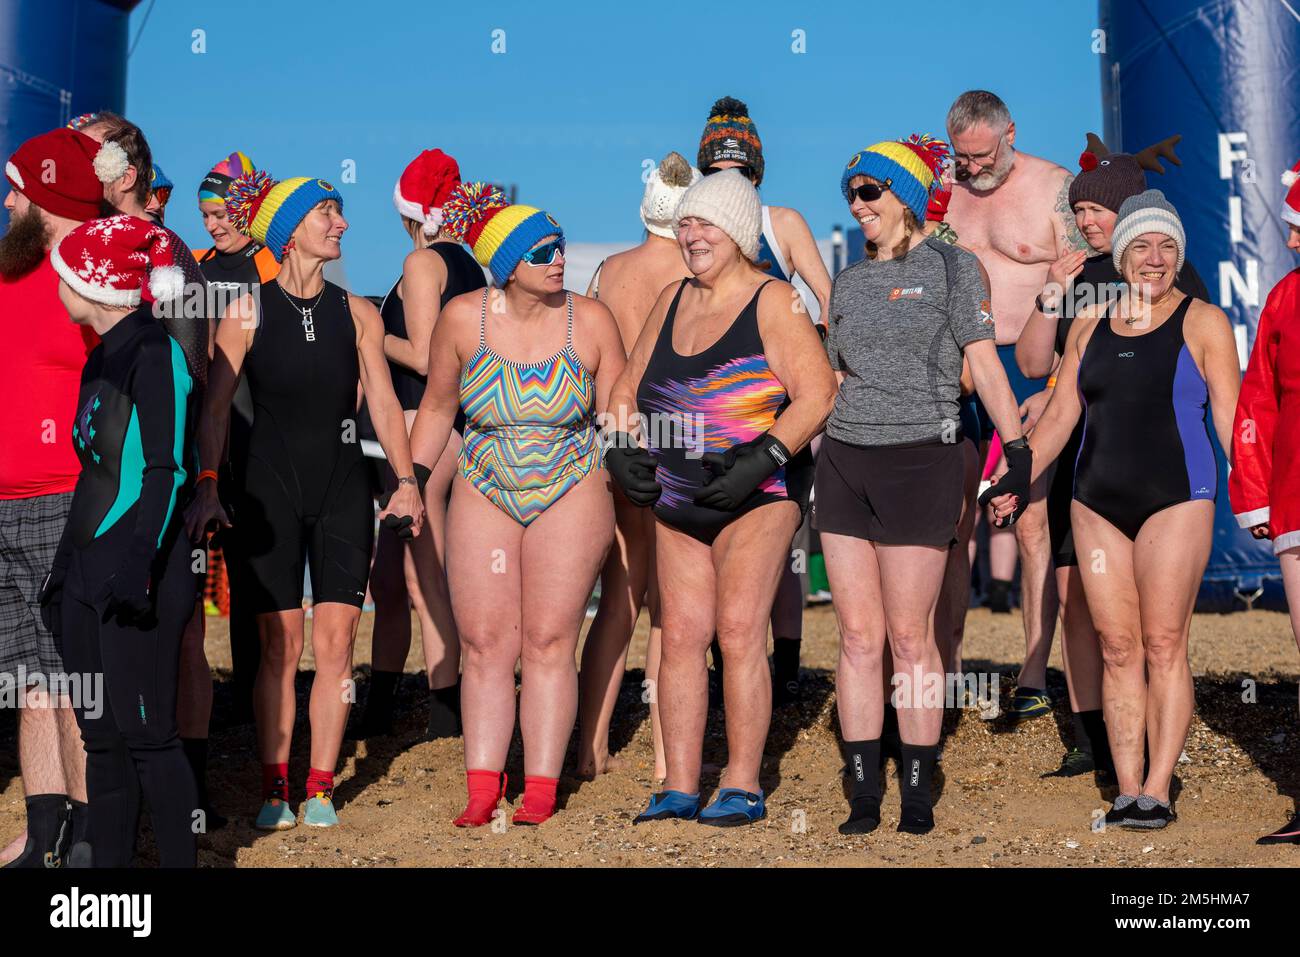 Nuotatori in costume immagini e fotografie stock ad alta risoluzione - Alamy